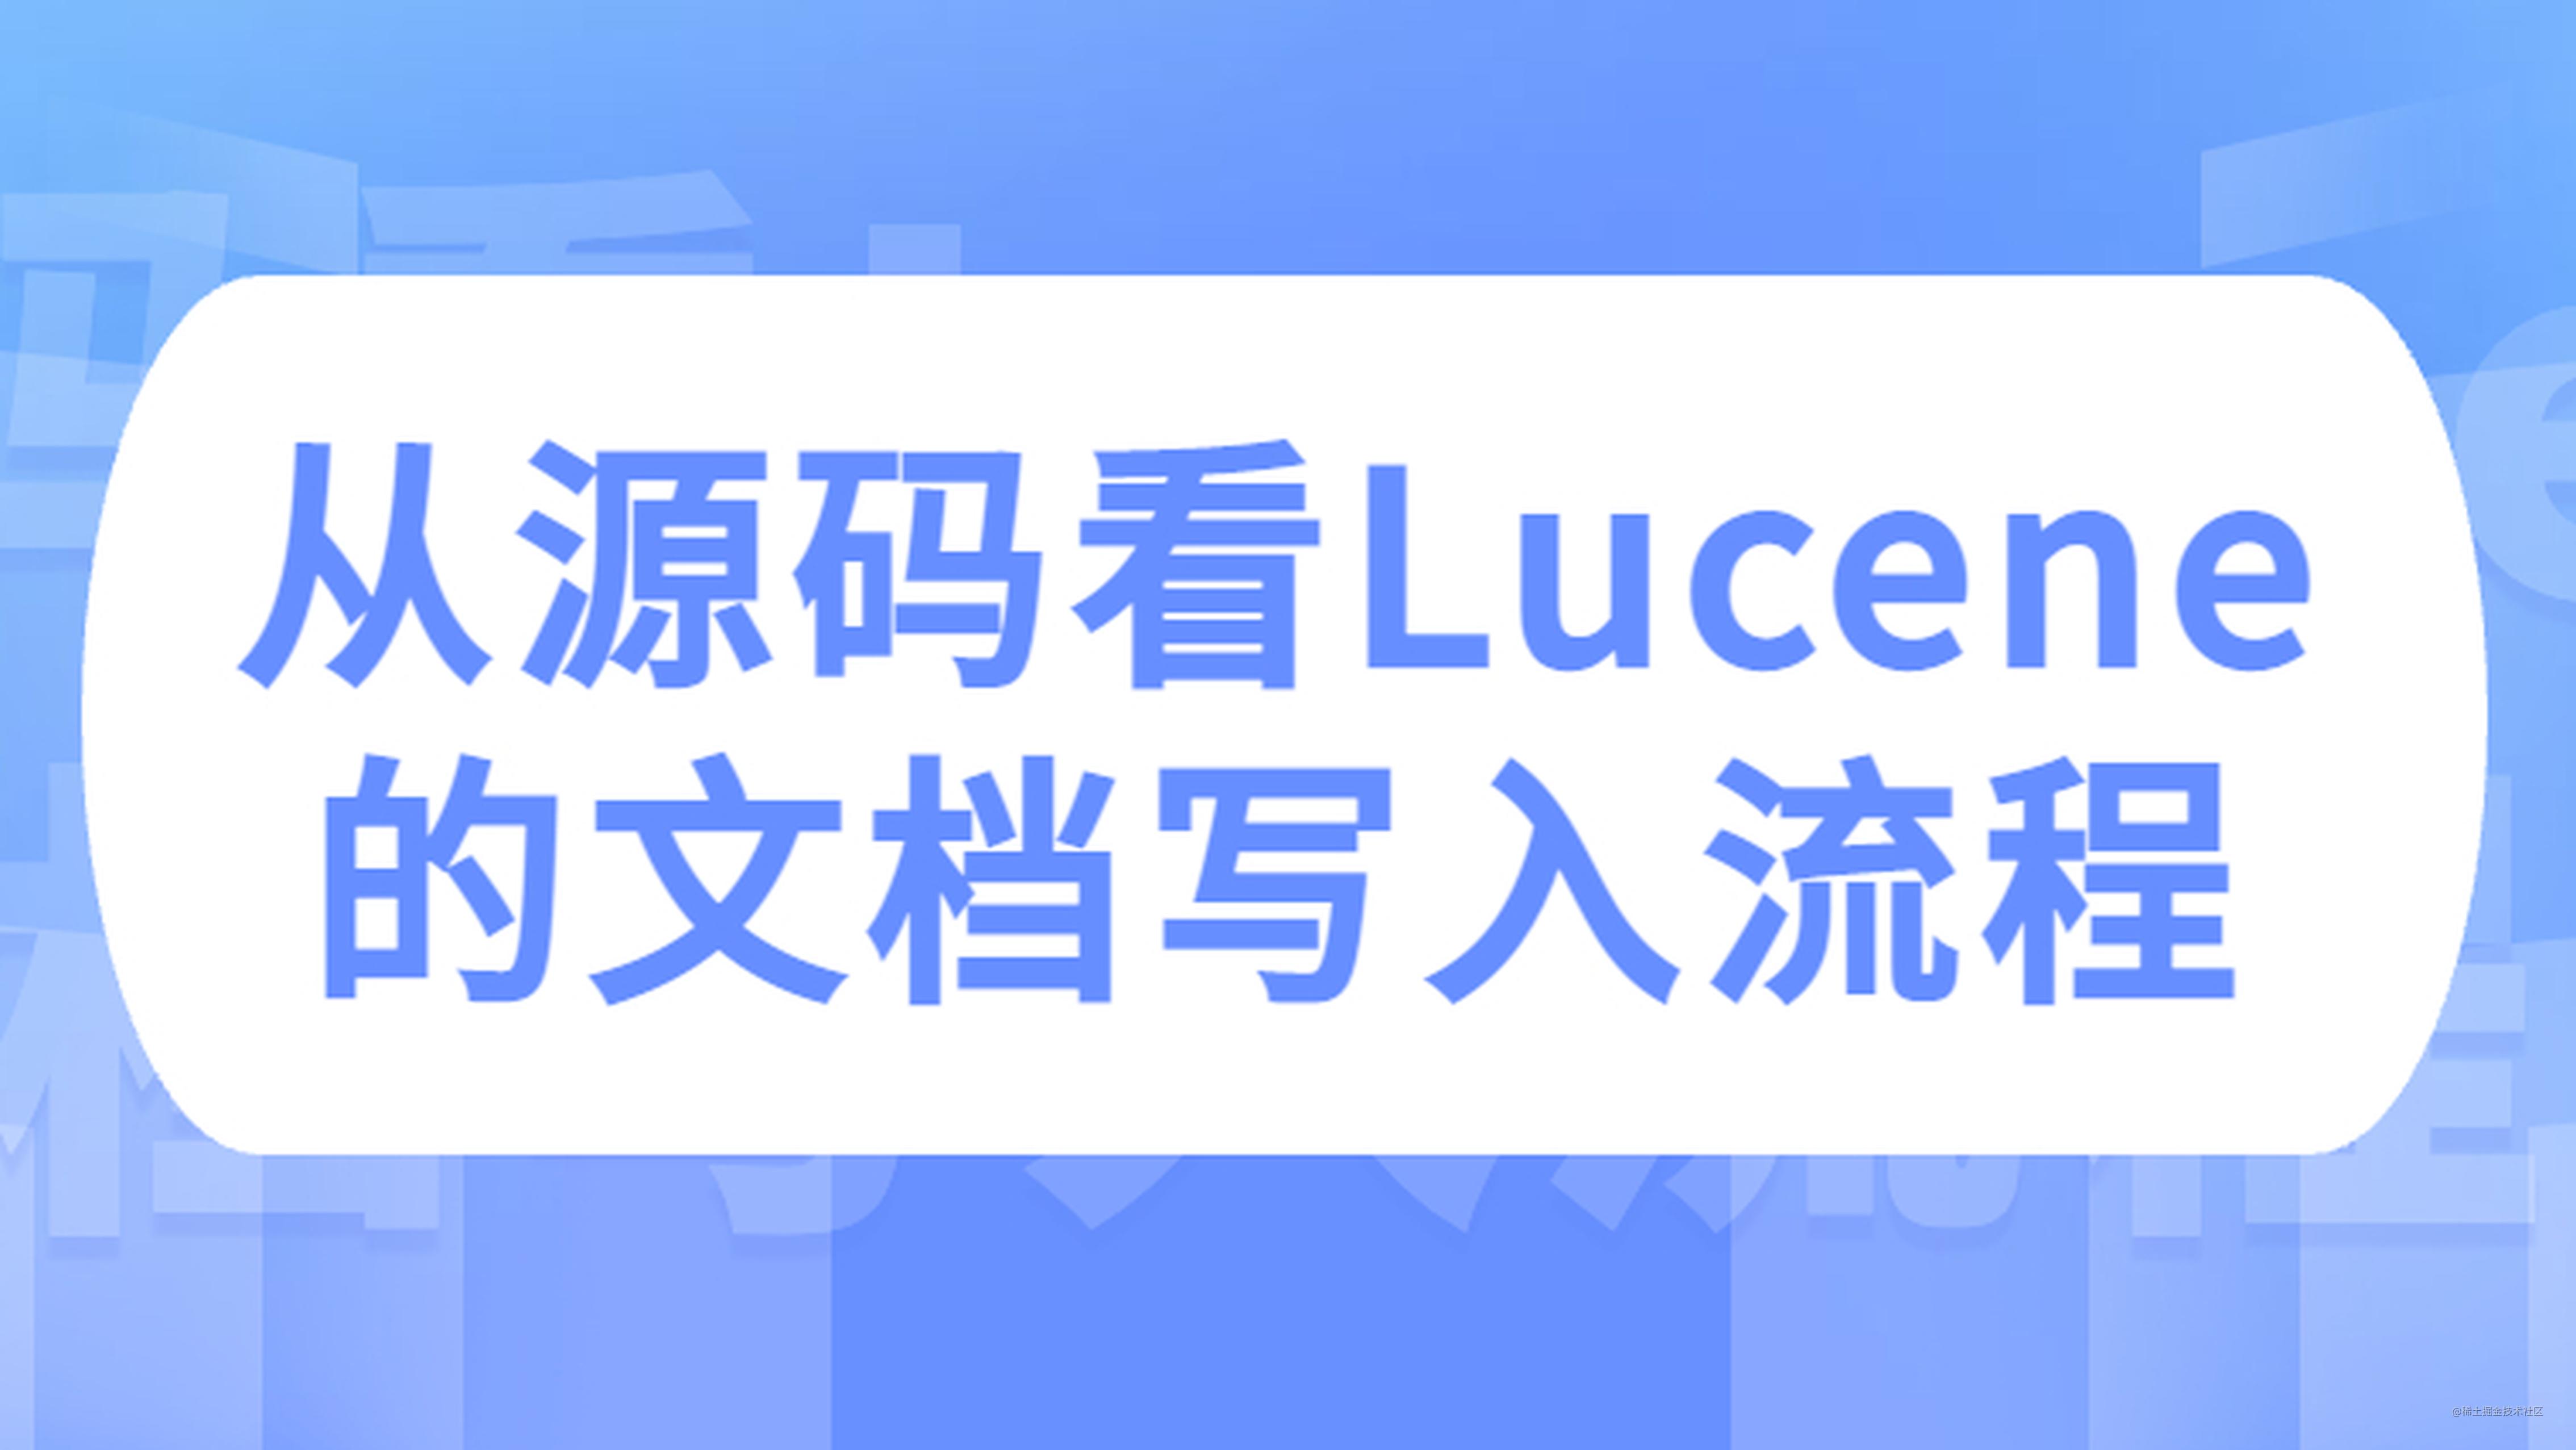 从源码看 Lucene 的文档写入流程